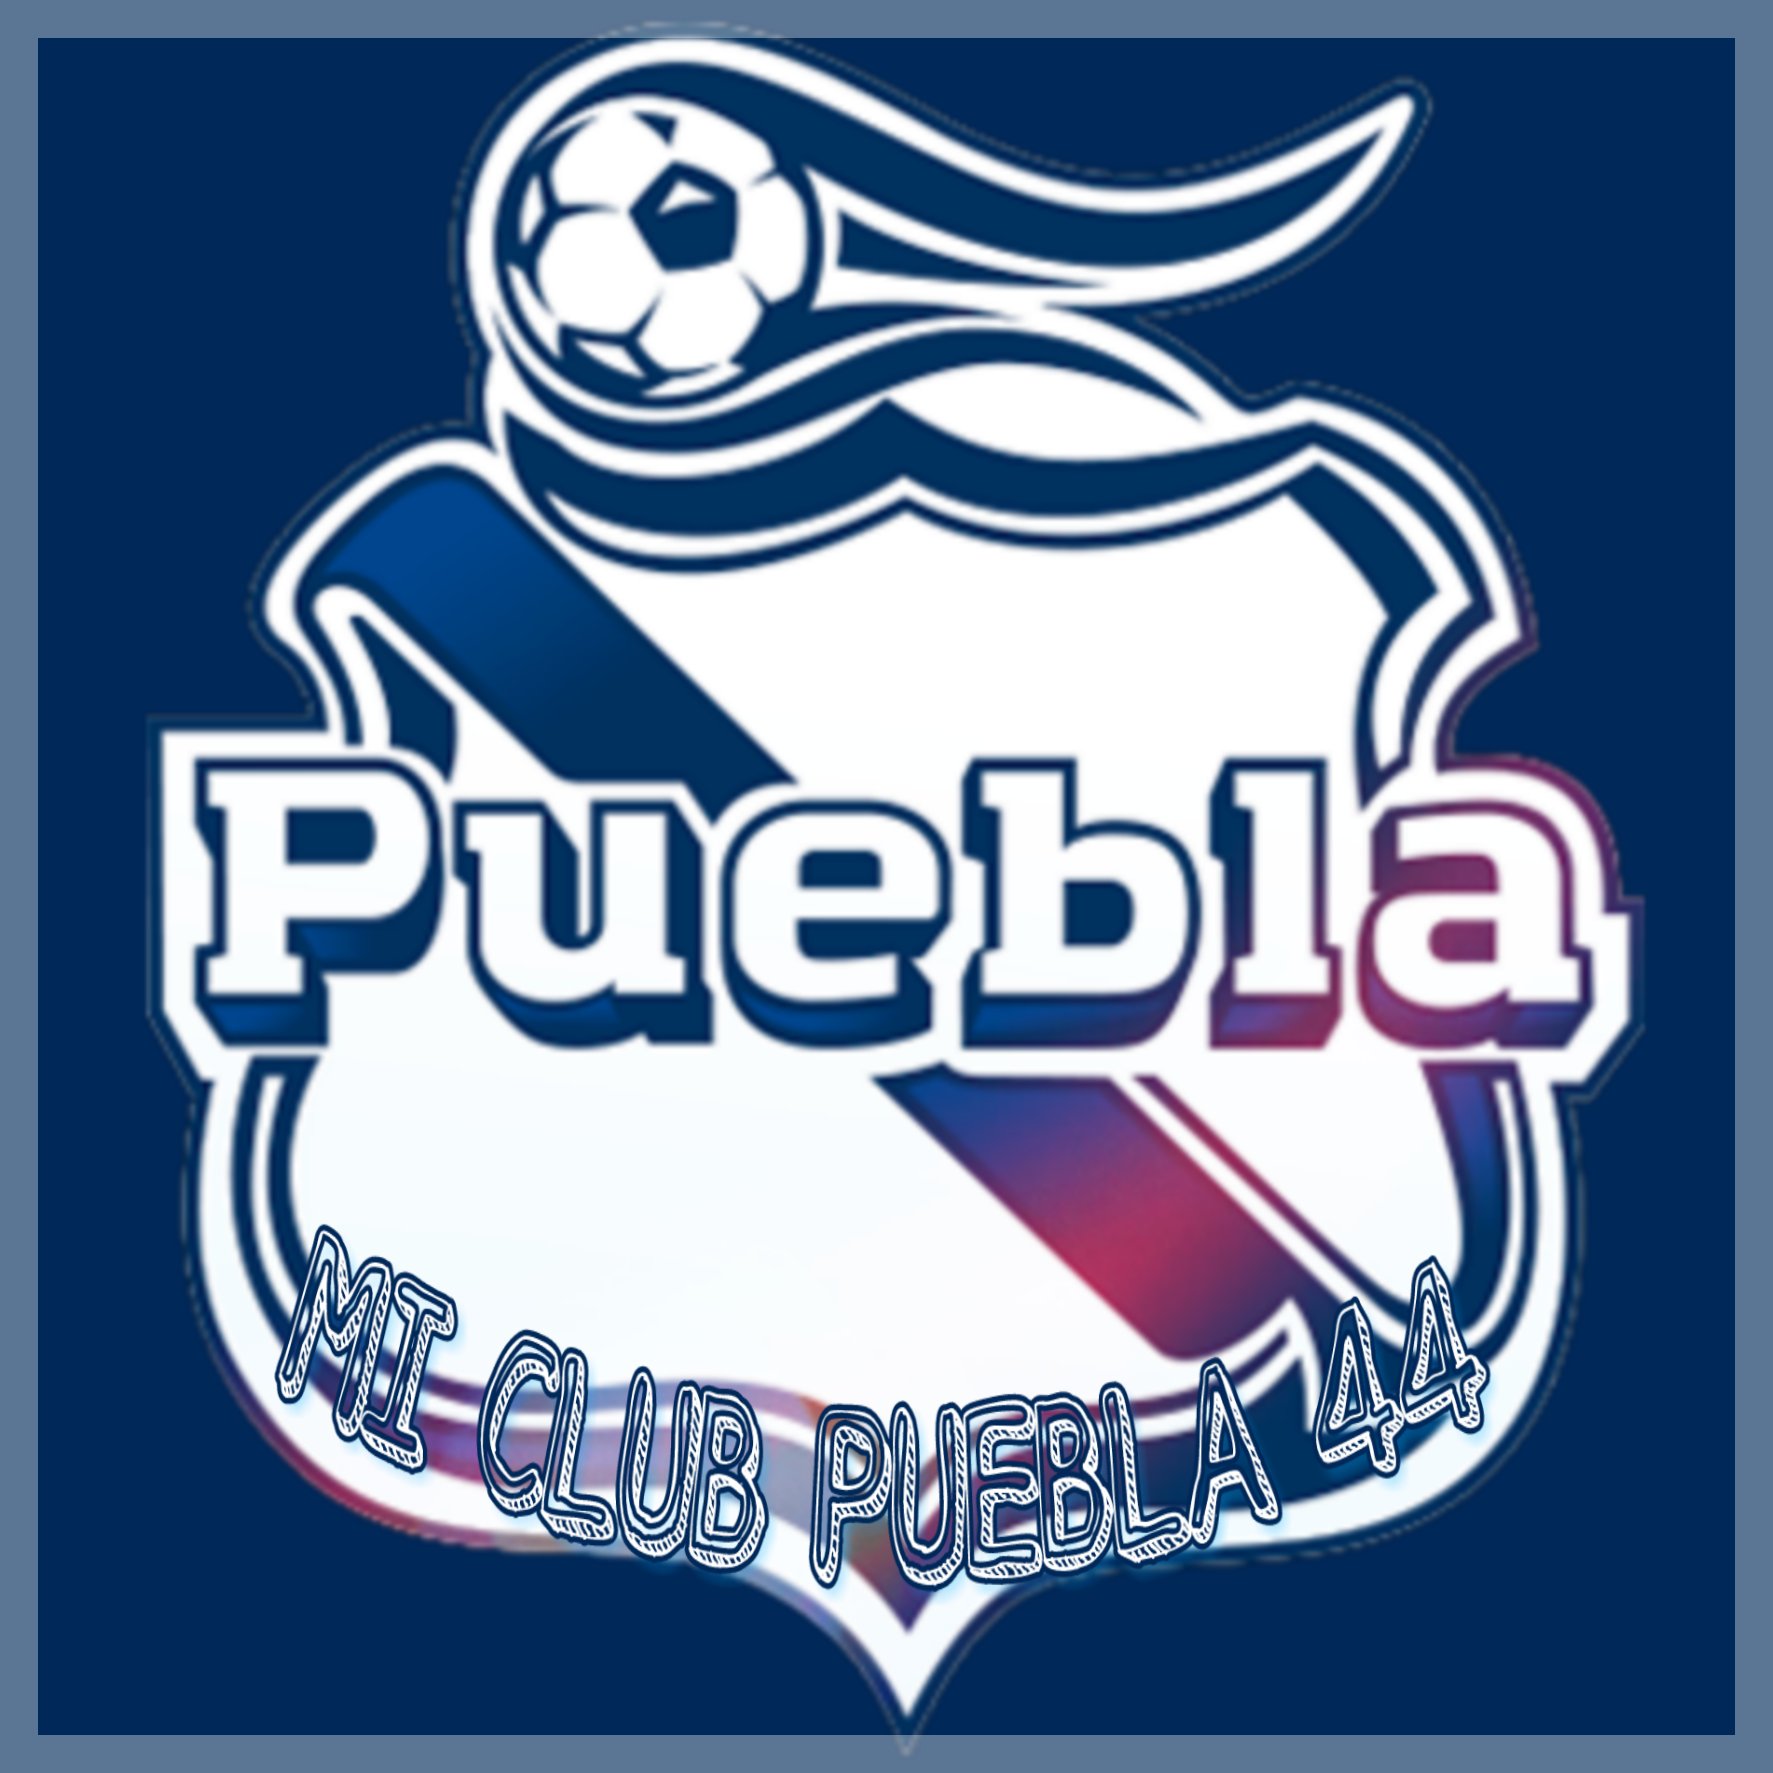 Mi Club Puebla 44 (@44Puebla) / Twitter